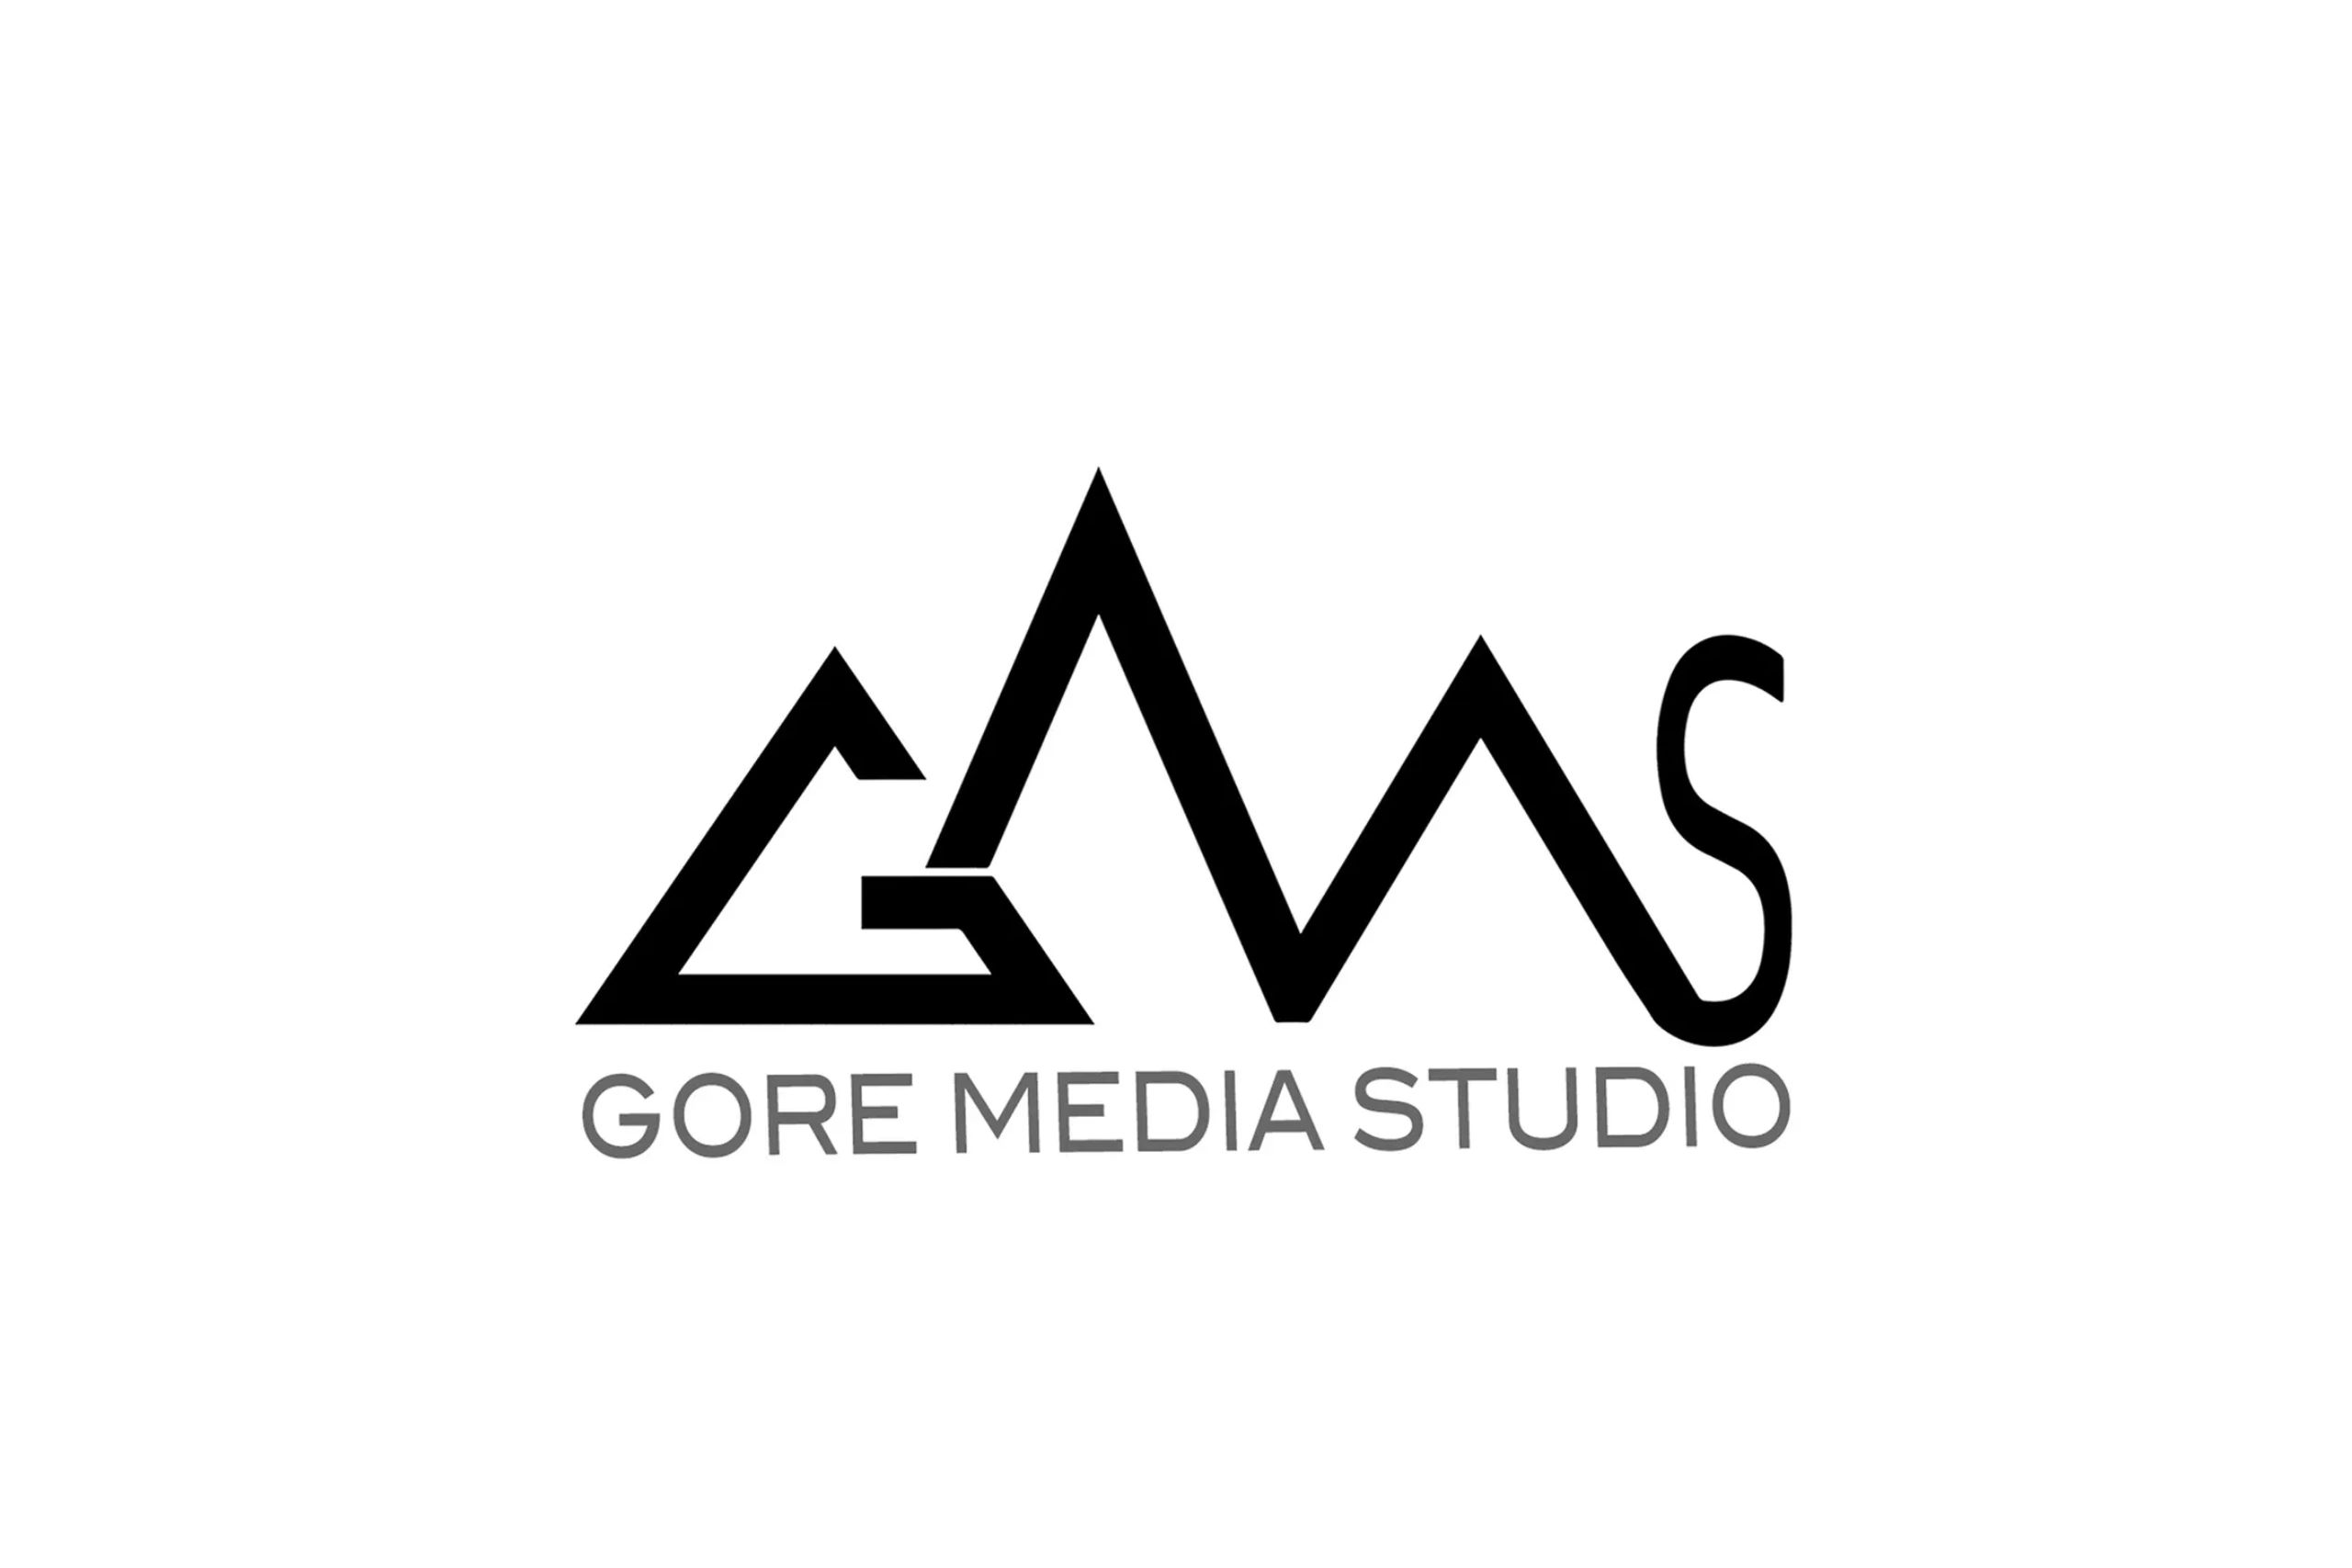 GORE MEDIA STUDIO